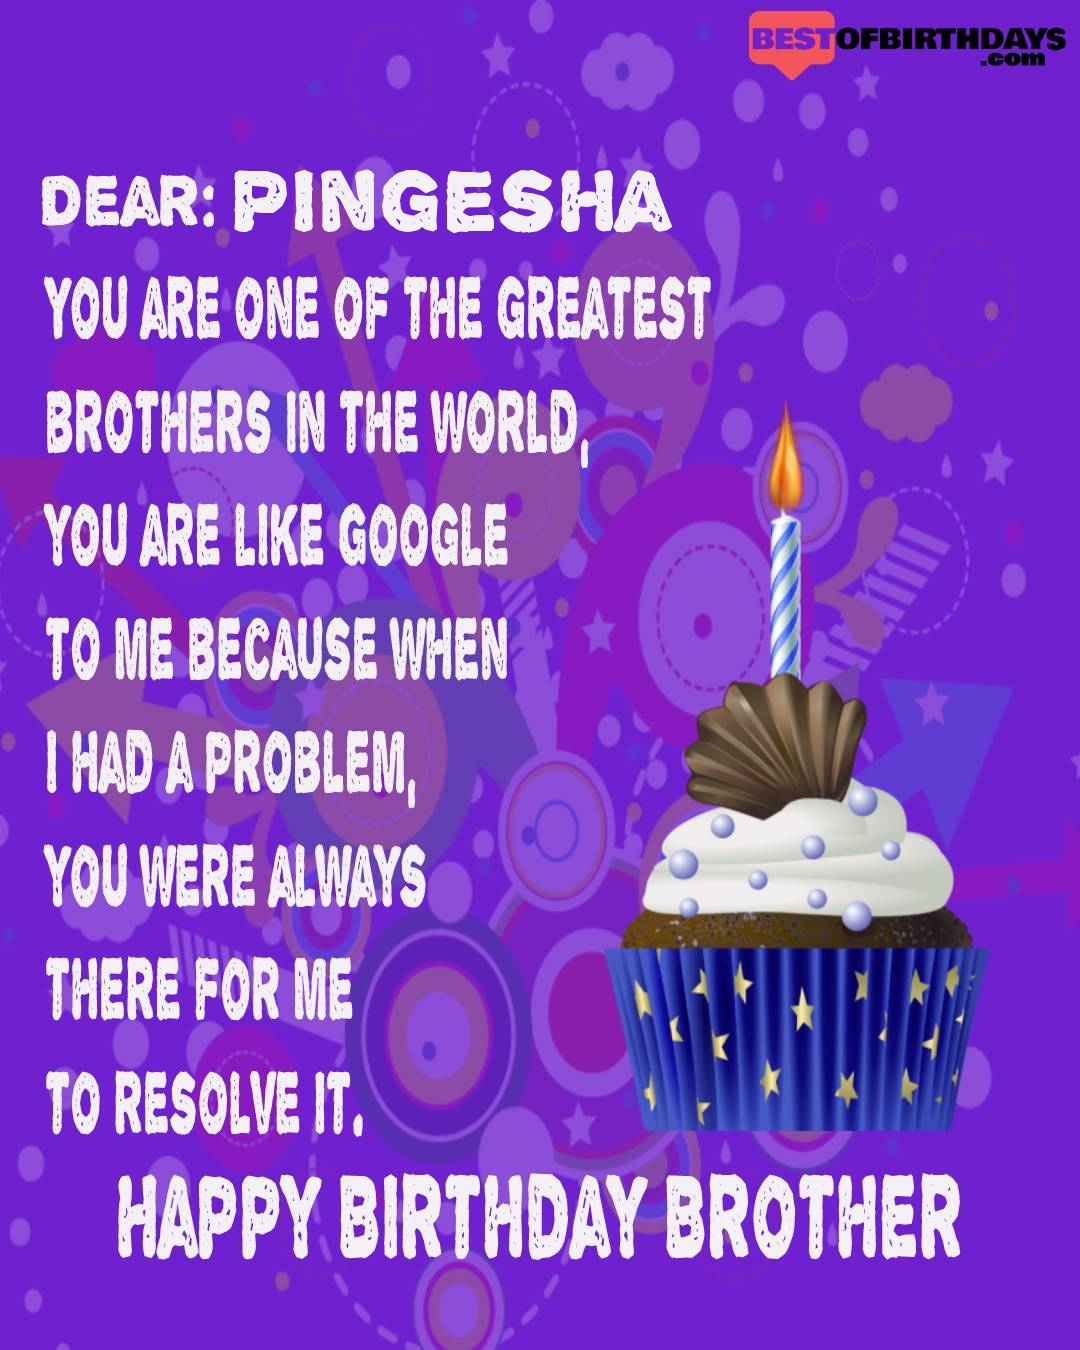 Happy birthday pingesha bhai brother bro